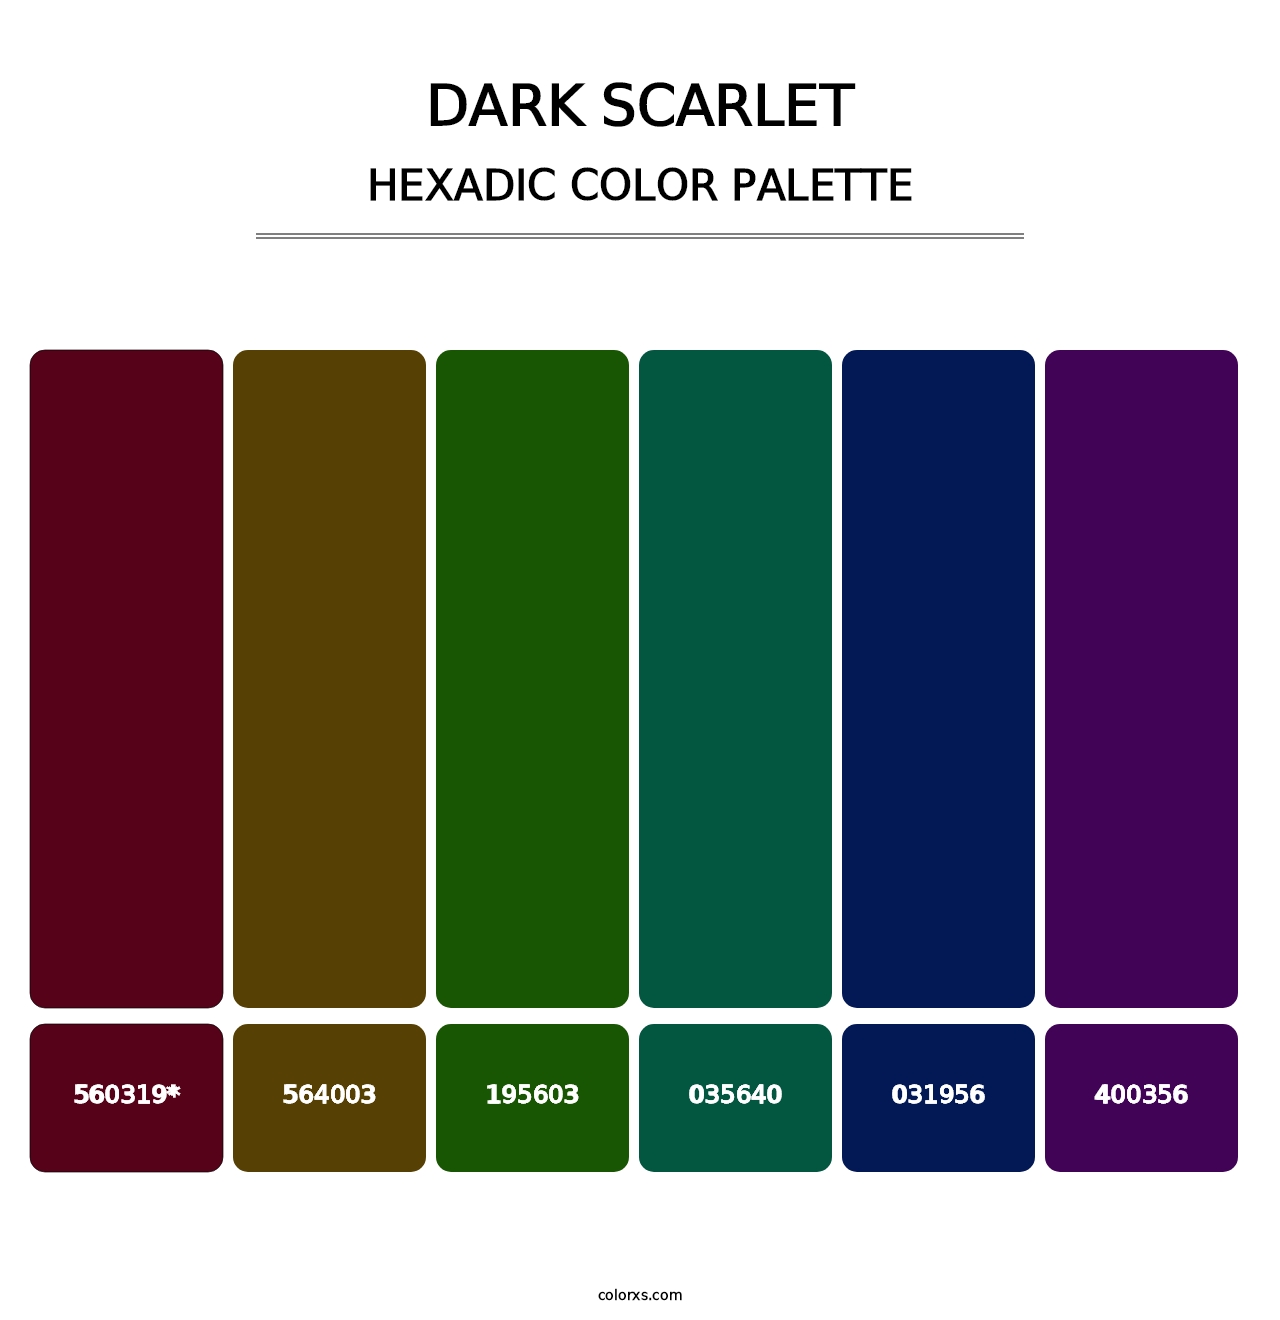 Dark Scarlet - Hexadic Color Palette